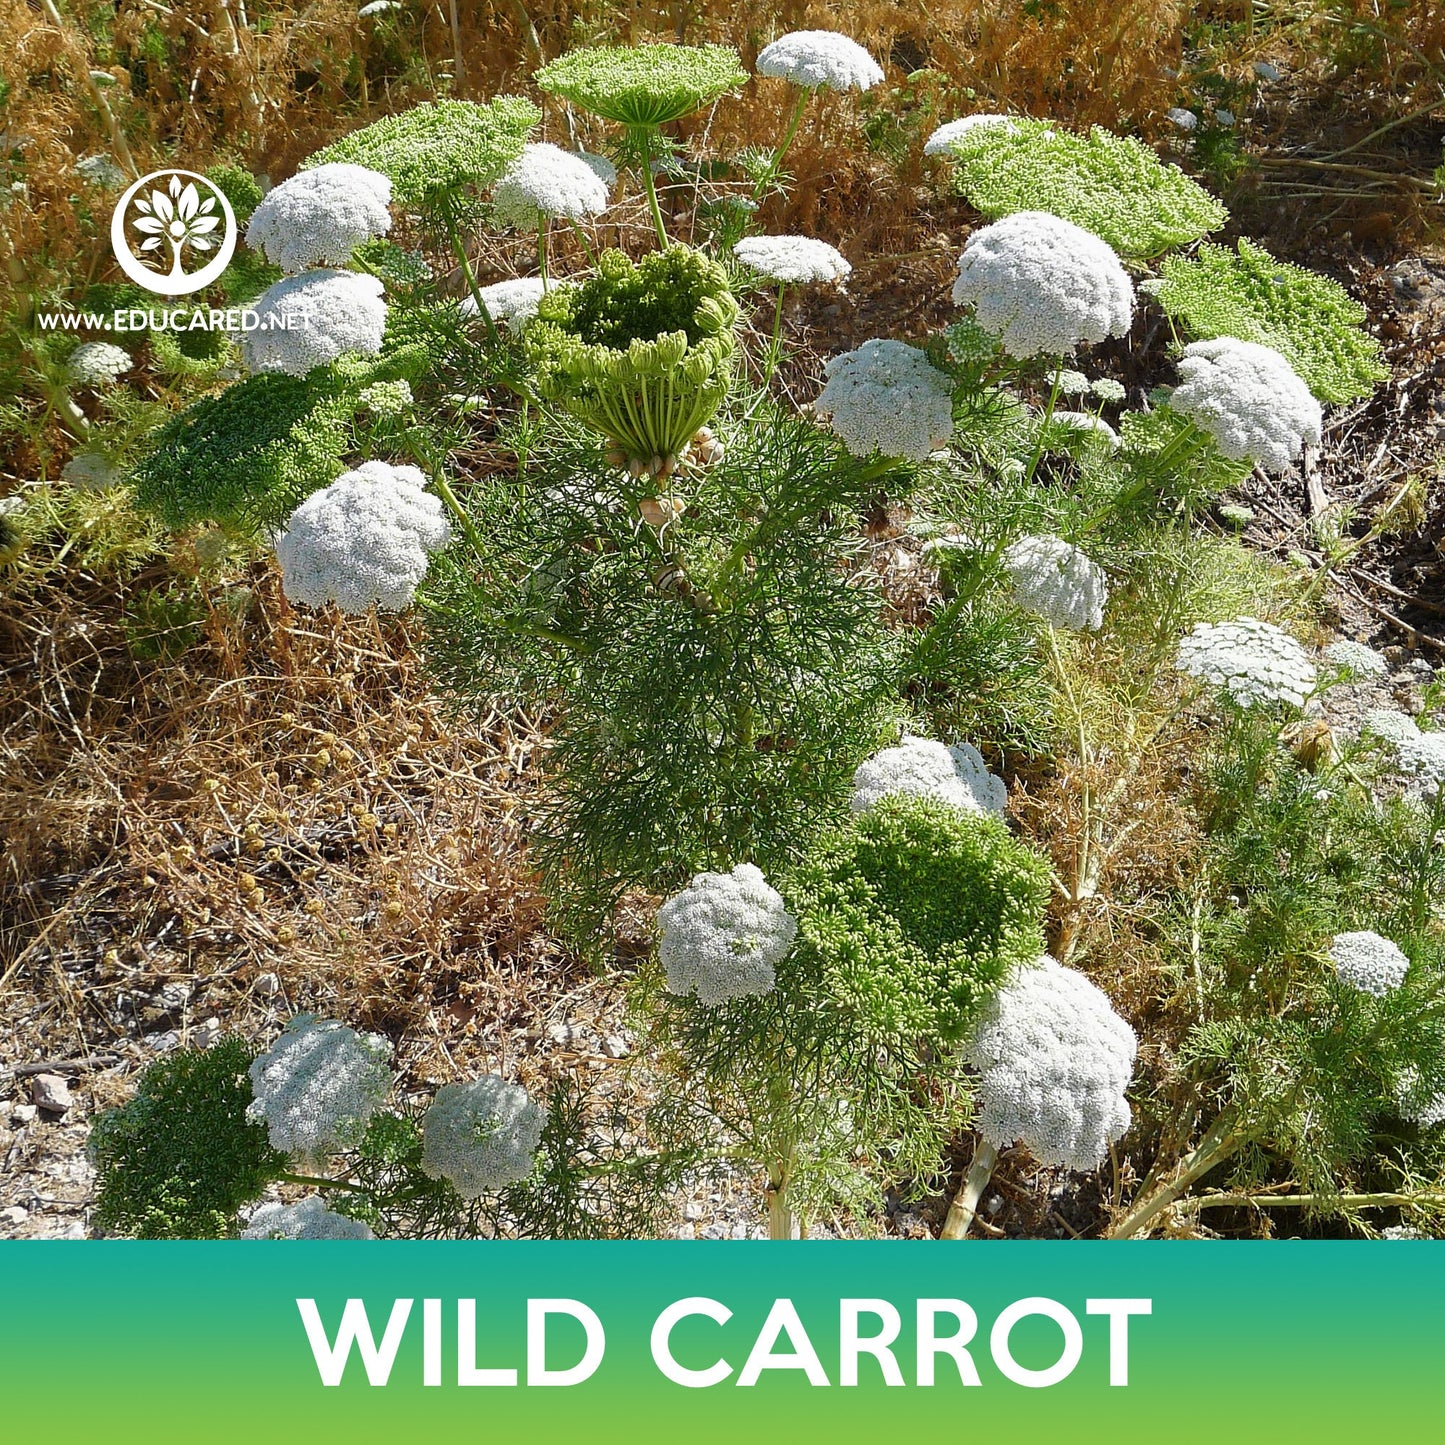 Wild Carrot Seeds, Daucus carota